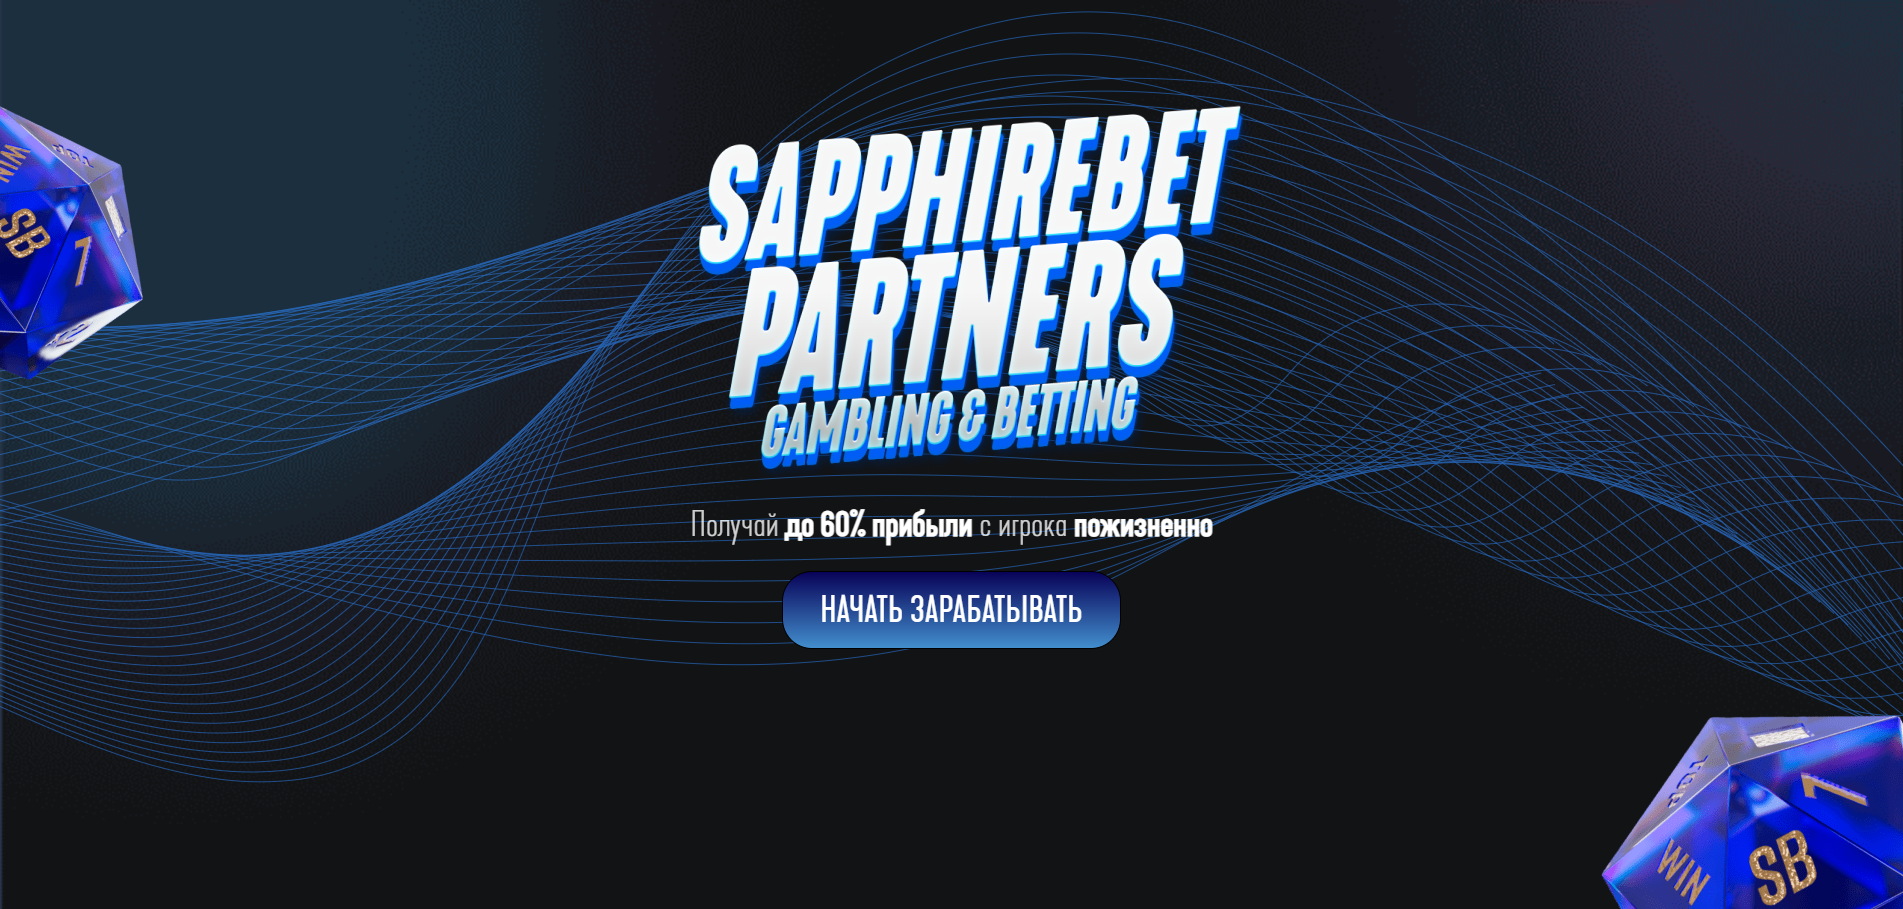 Sapphirebet Partners — отзывы и обзор партнерской программы